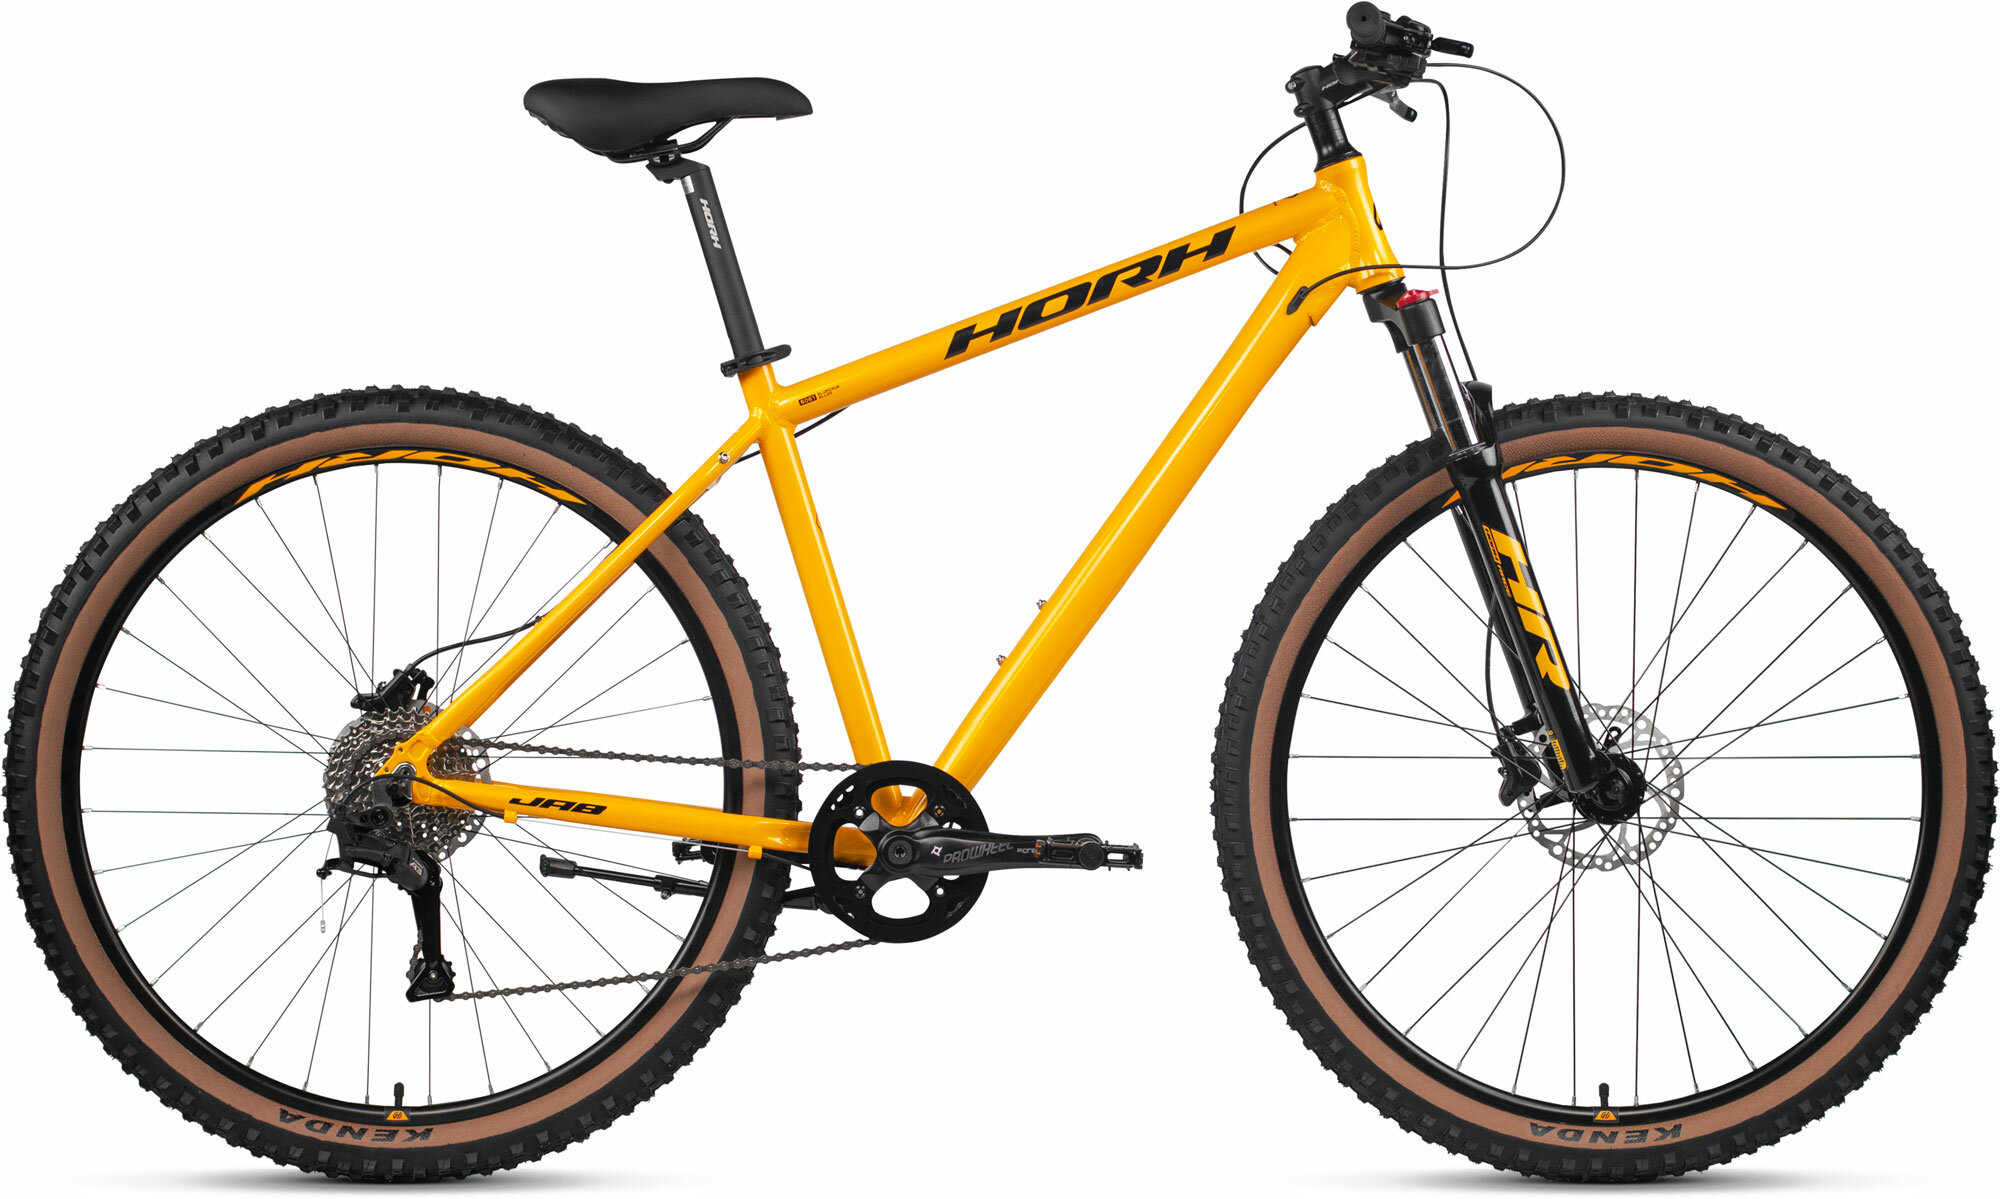 Велосипед горный HORH JAB JAB29AM 29" (2024), хардтейл, взрослый, мужской, алюминиевая рама, 8 скоростей, дисковые гидравлические тормоза, цвет Yellow-Black, желтый/черный цвет, размер рамы 21", для роста 185-195 см